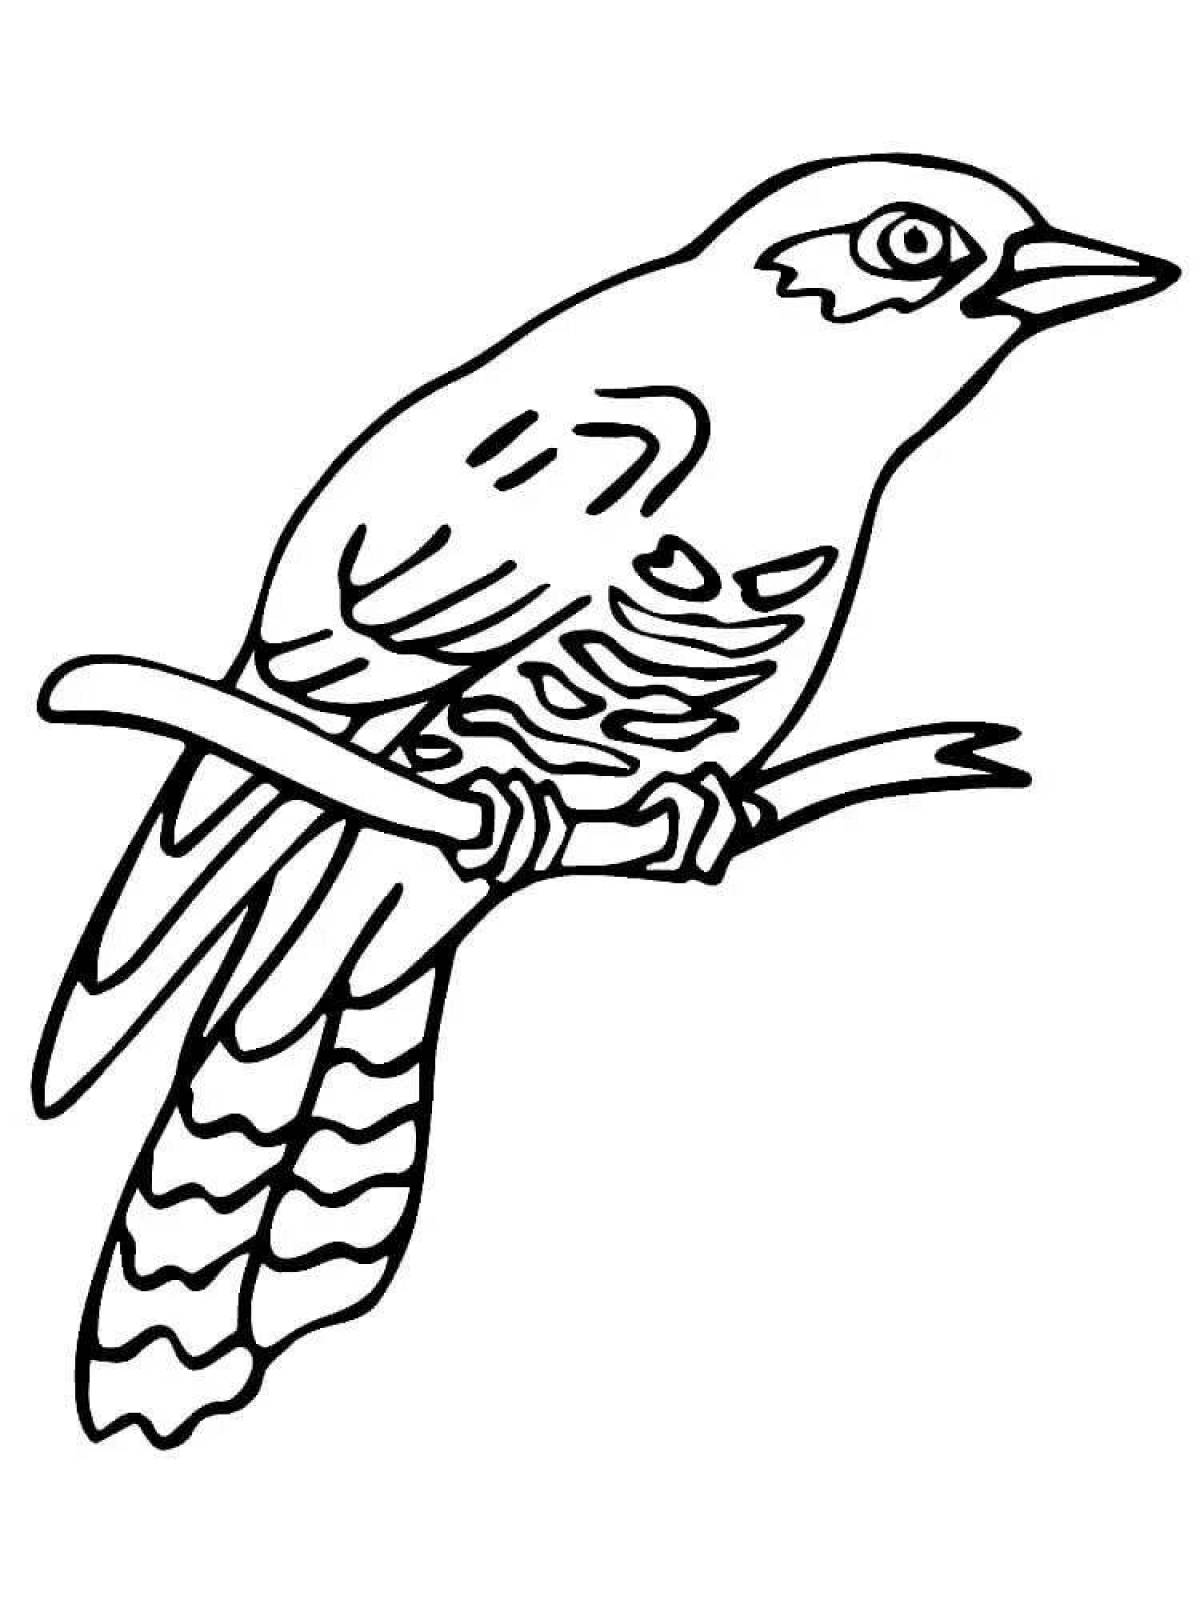 Zani cuckoo coloring for schoolchildren